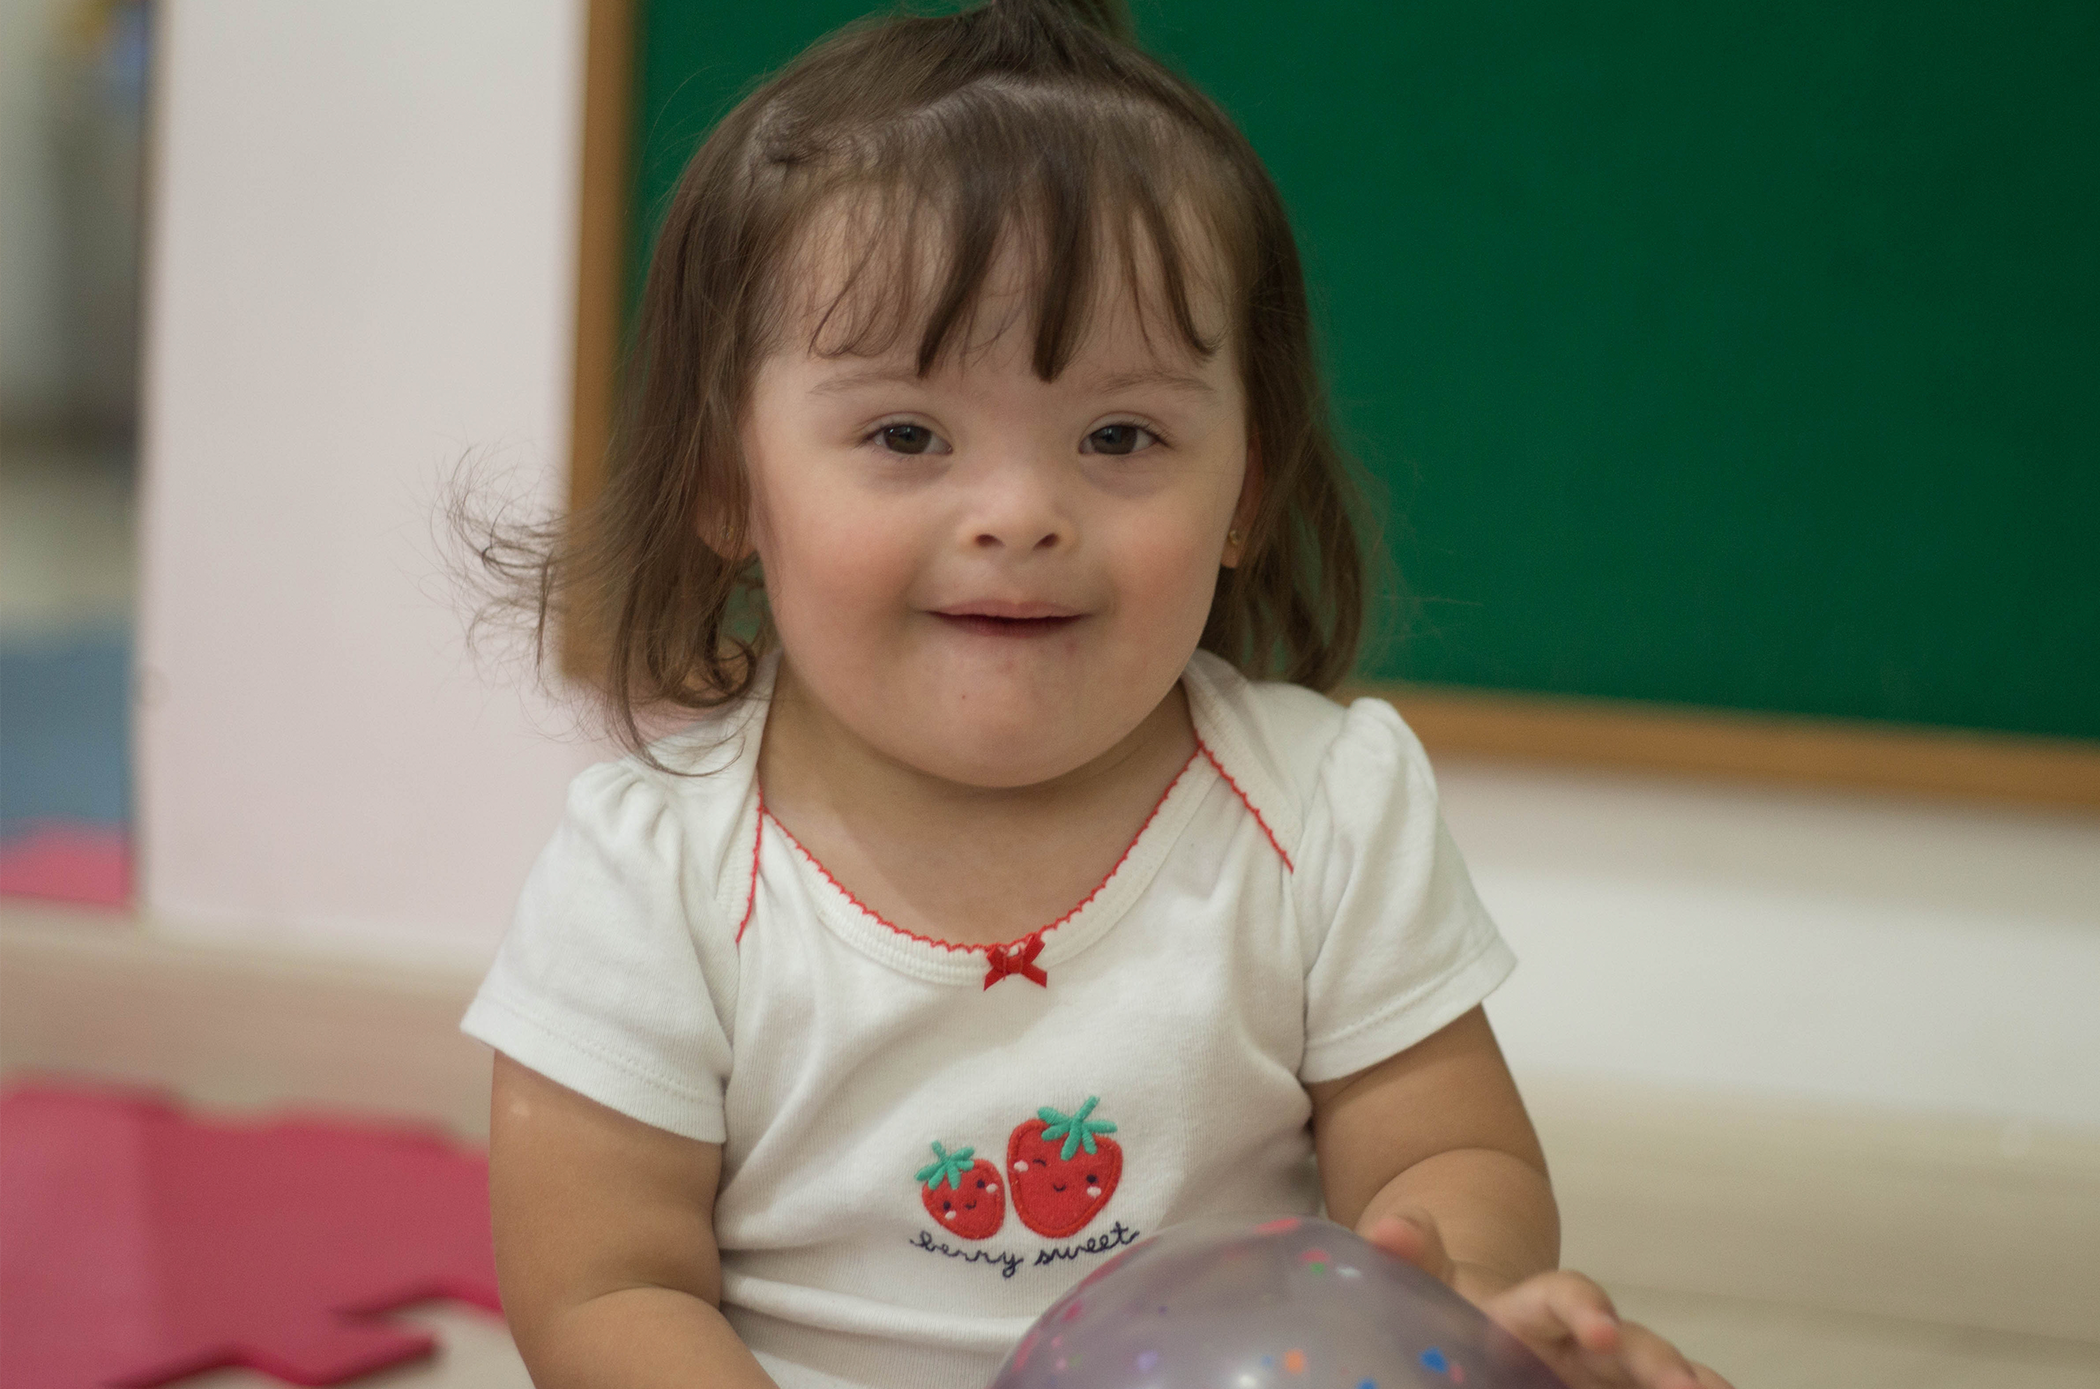 Aluna da escola CEDAE dentro da sala de aula, sentada no chão, com uma camisa branca com o desenho de dois morangos, ela sorri